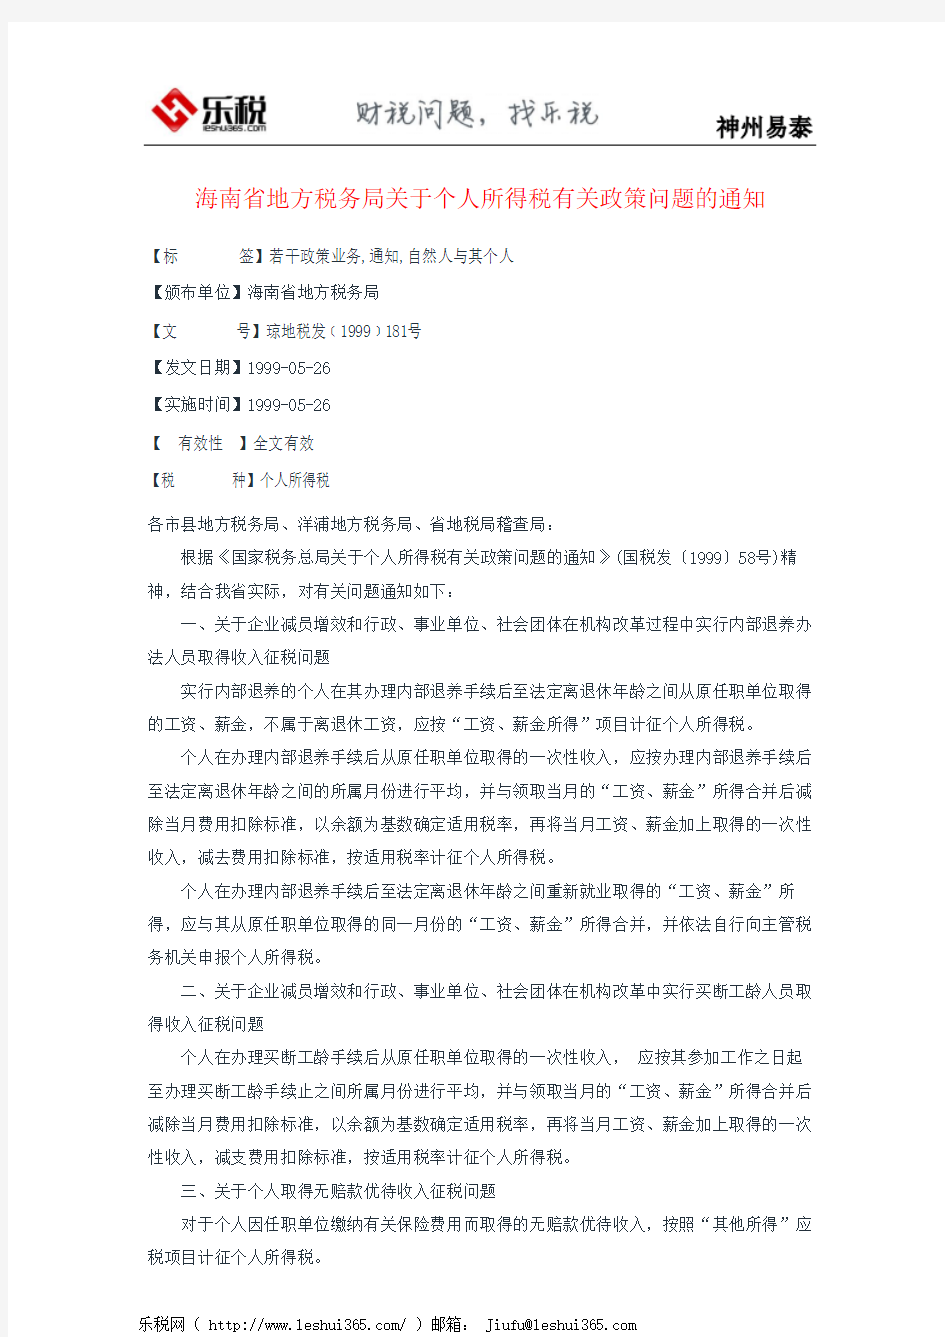 海南省地方税务局关于个人所得税有关政策问题的通知